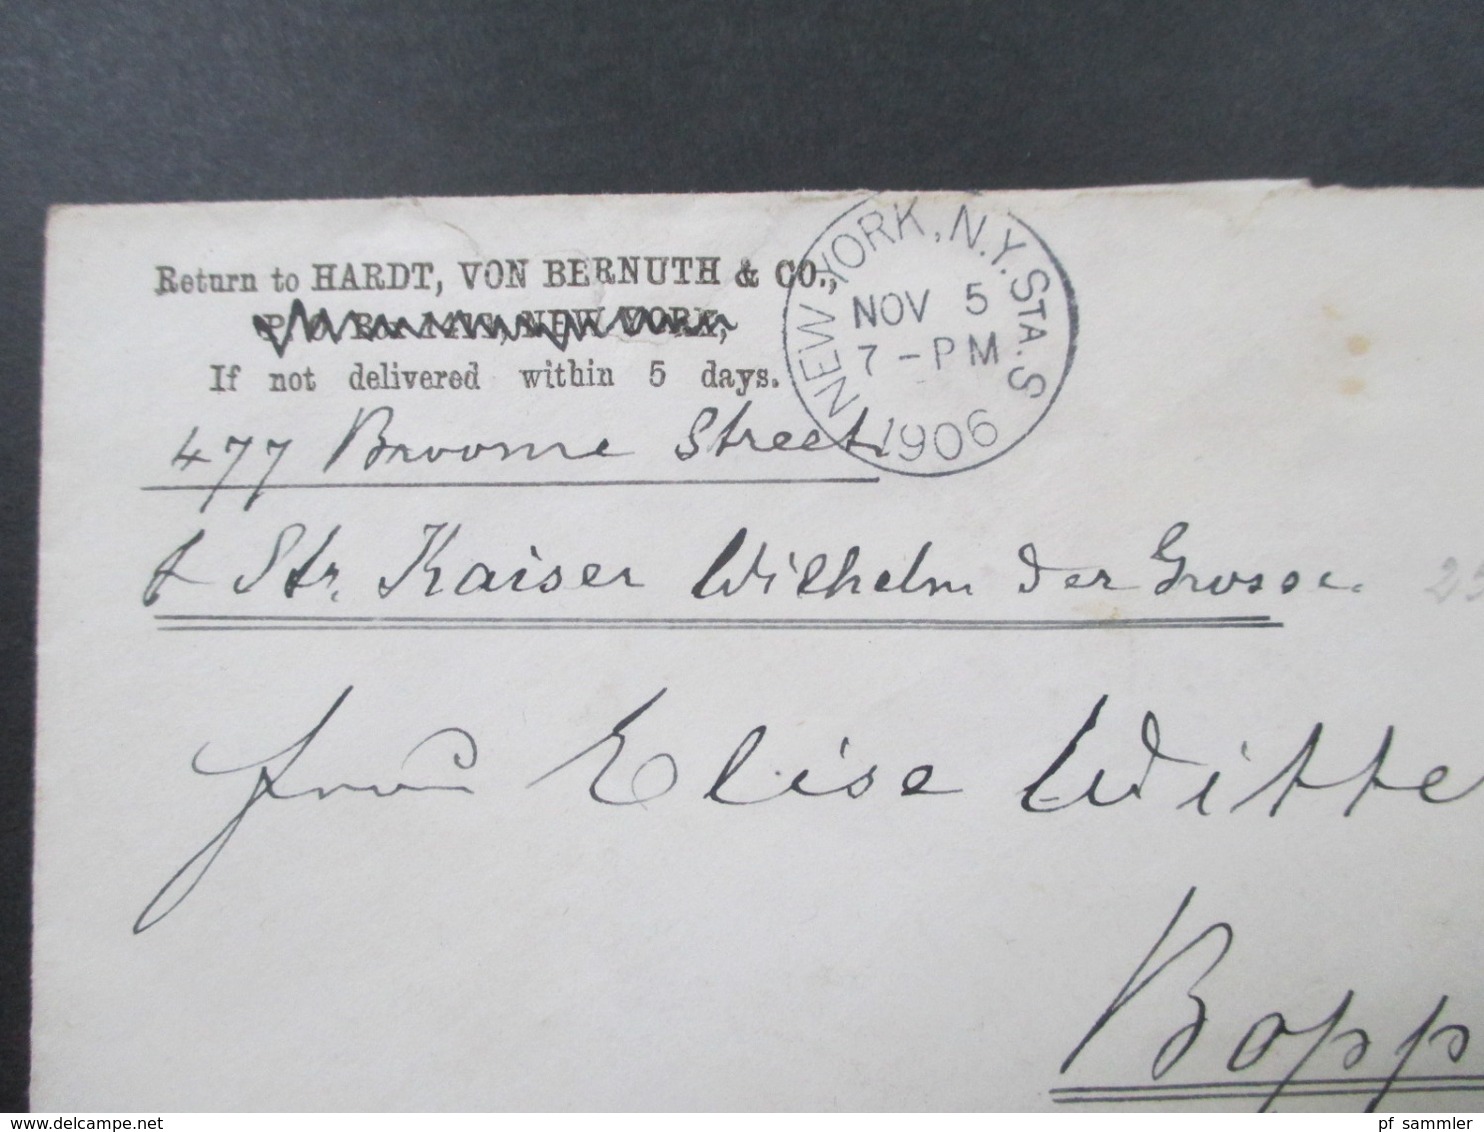 USA 1906 GA Umschlag Schiffspost New York - Boppard Per Steamer Kaiser Wilhelm Dampfer - Lettres & Documents